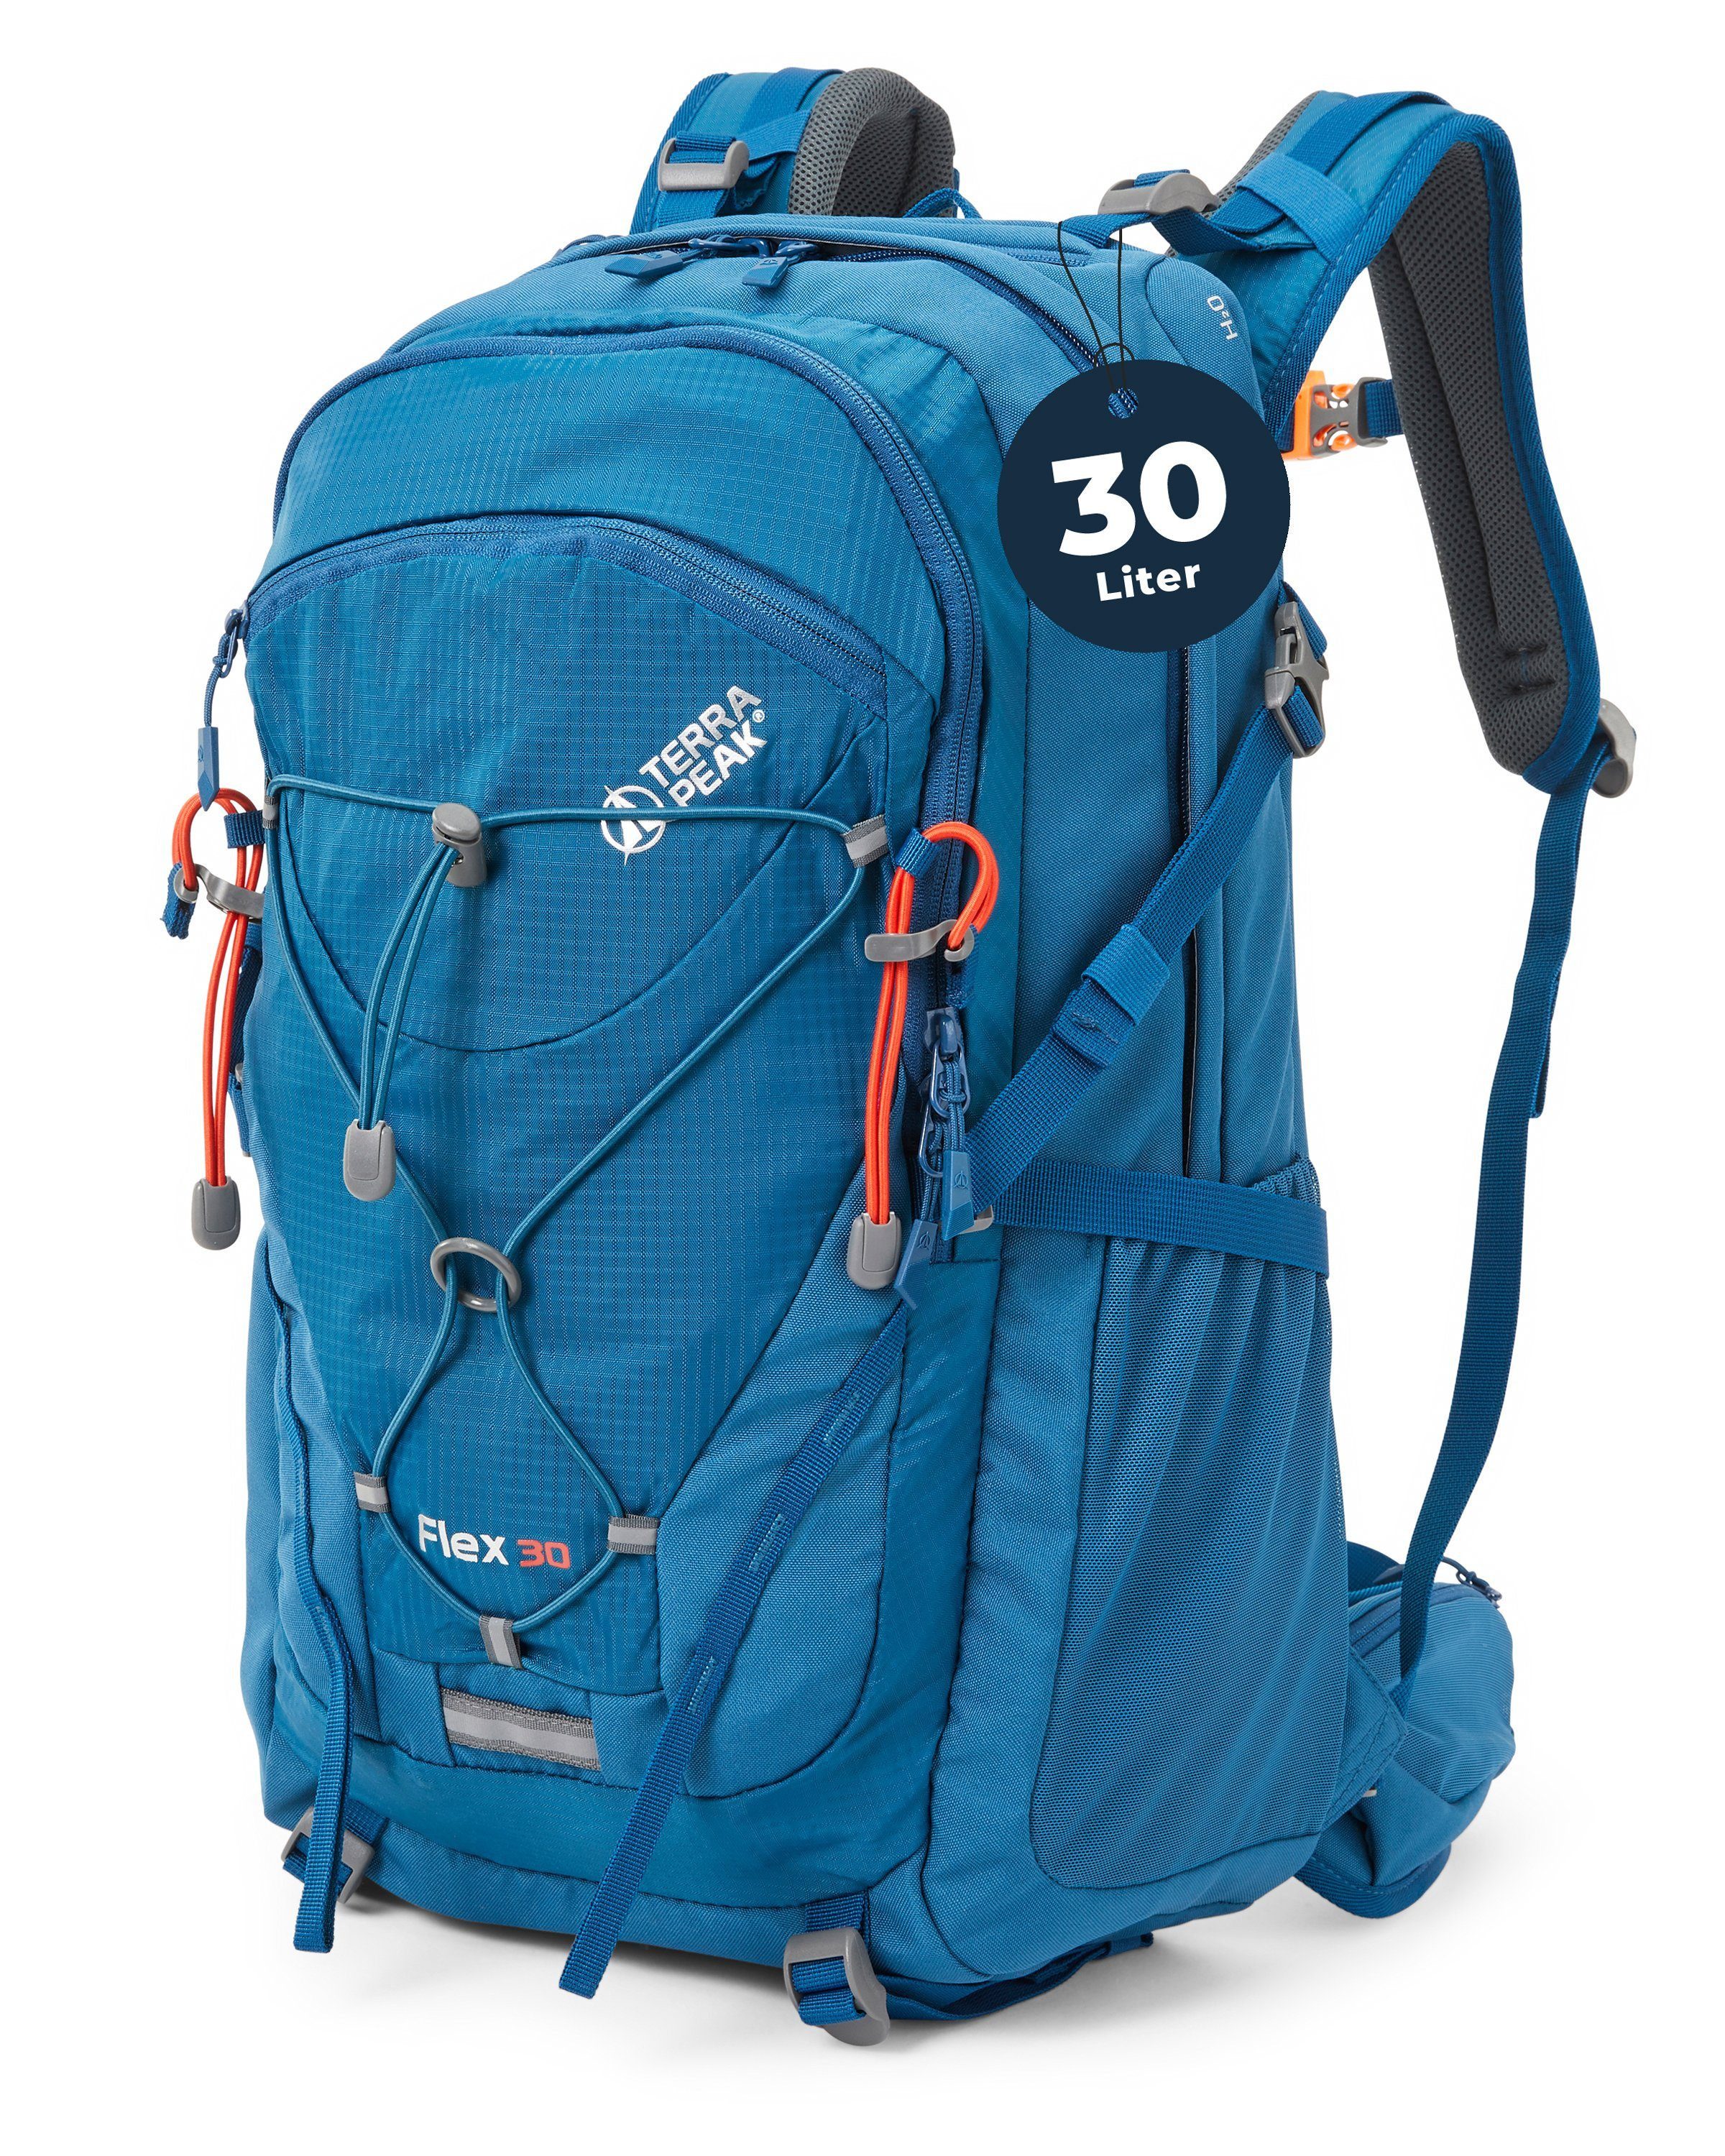 Terra Peak Wanderrucksack Flex 30, 30L mit YKK Reißverschluss Trekkingrucksack mit Hüftgurt